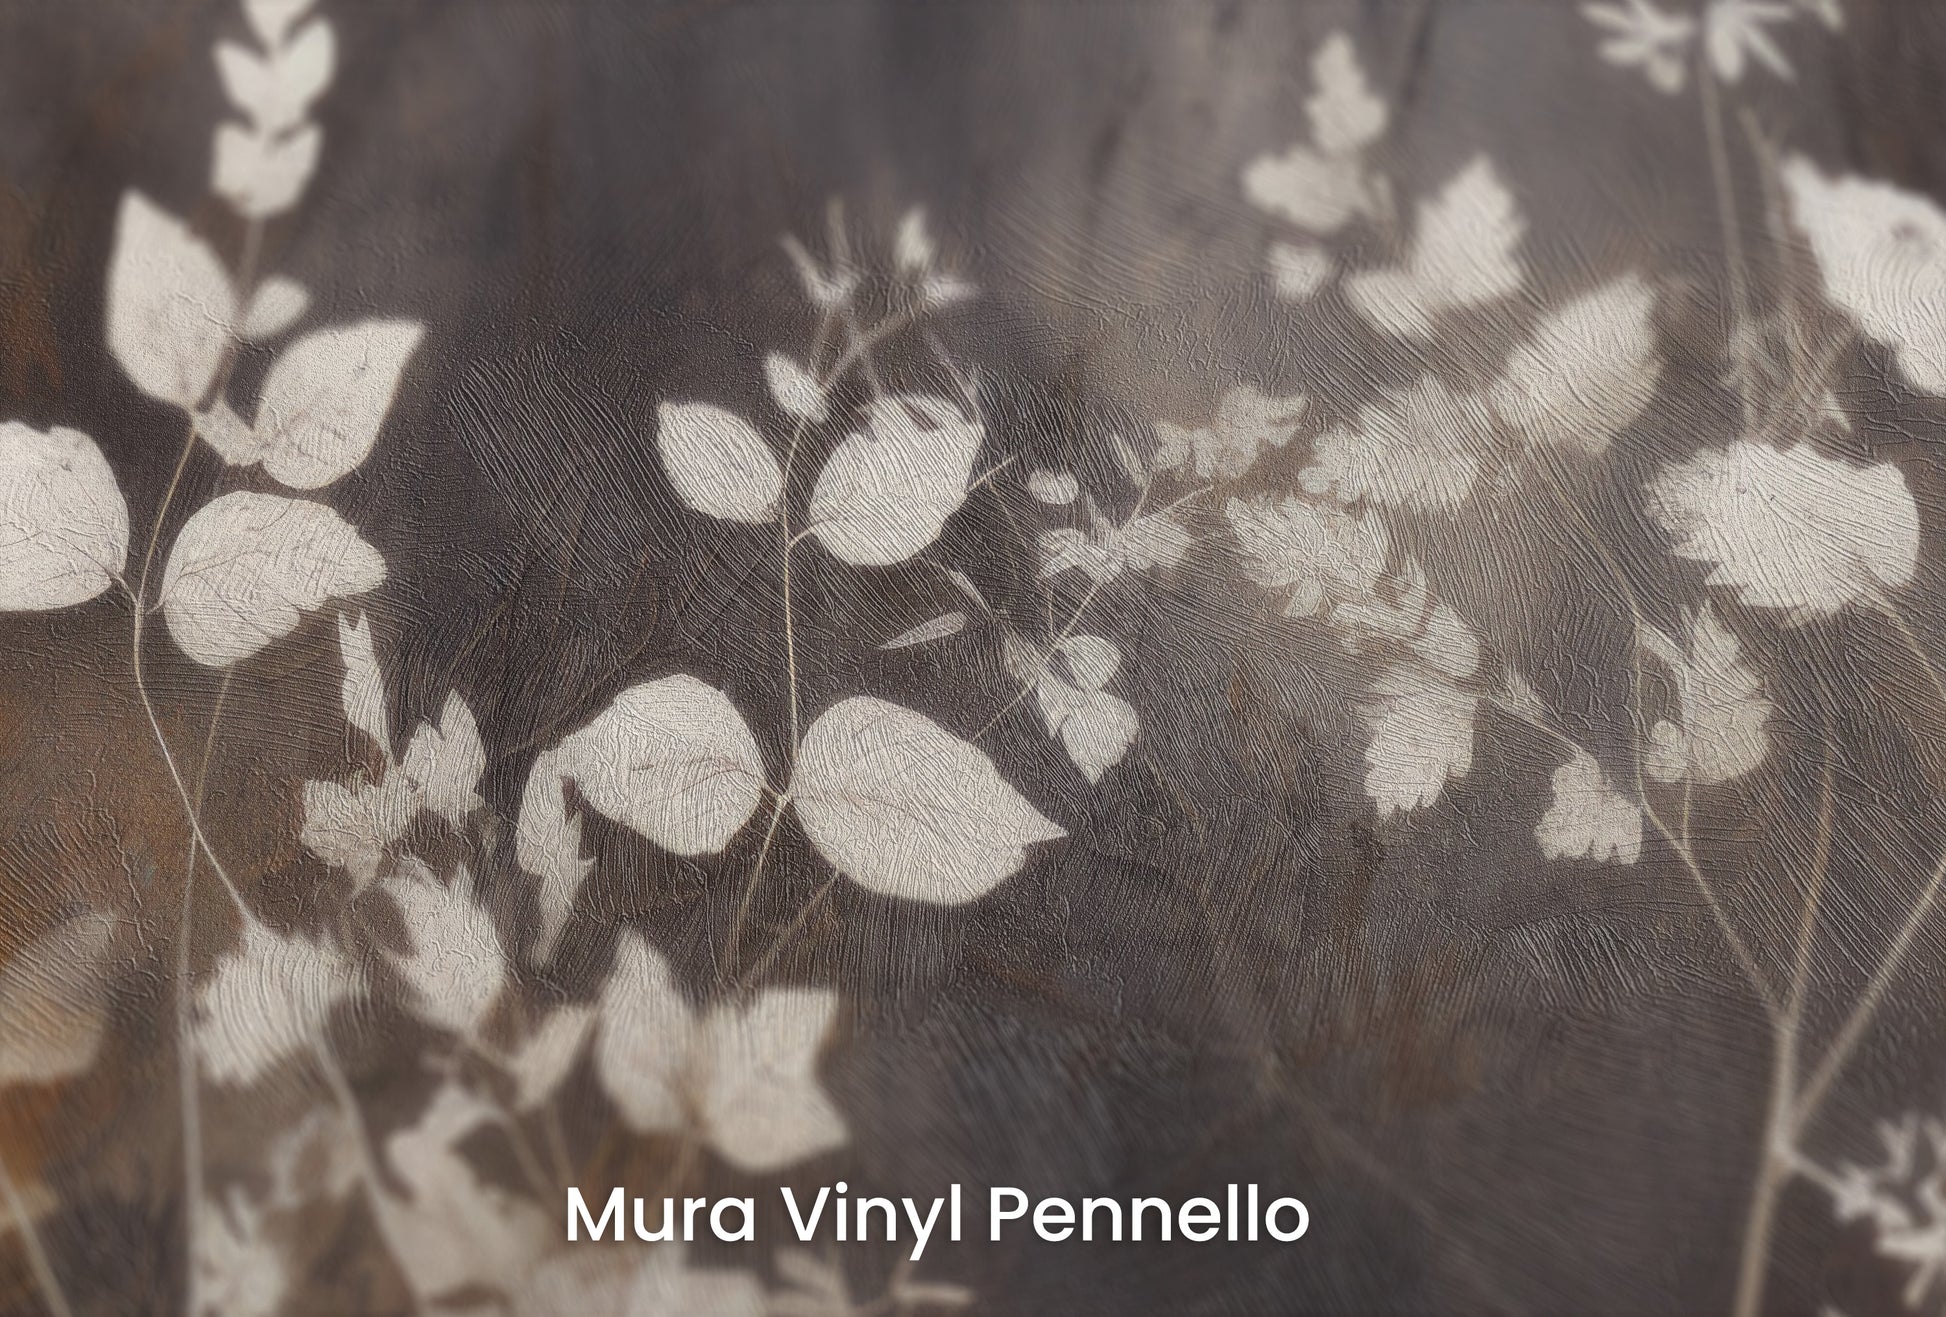 Zbliżenie na artystyczną fototapetę o nazwie Misty Floral Contrast na podłożu Mura Vinyl Pennello - faktura pociągnięć pędzla malarskiego.